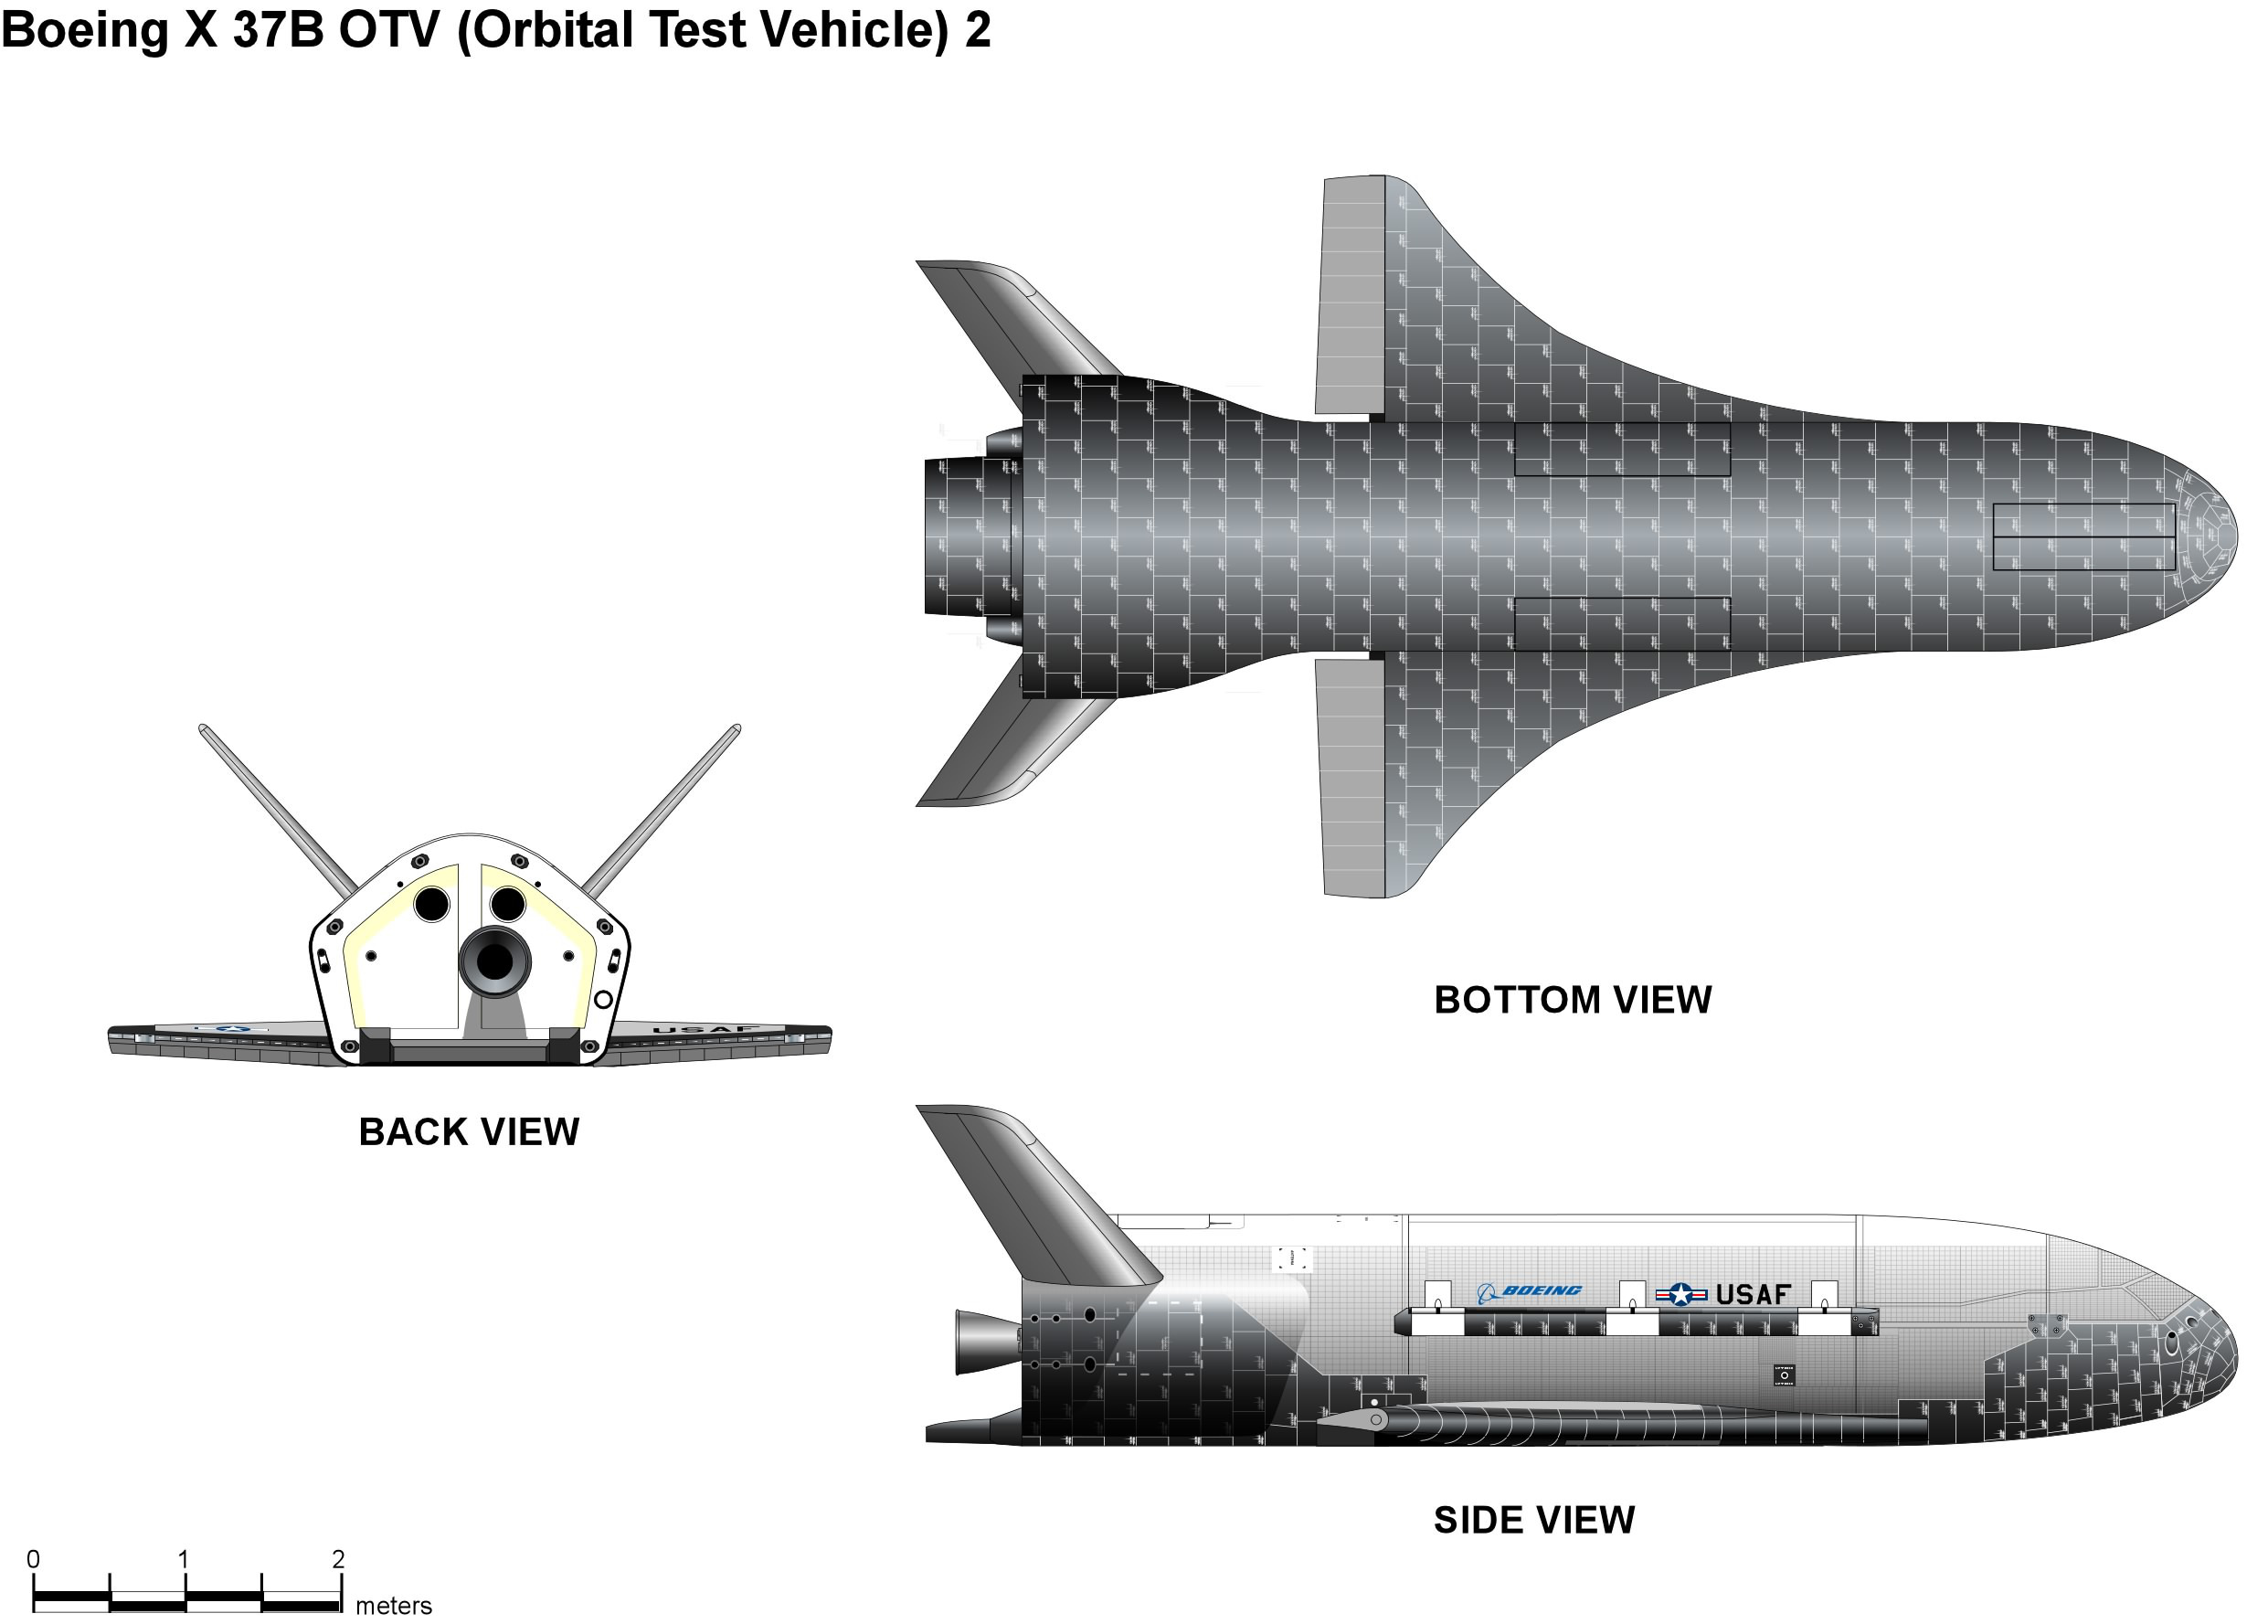 Х 37 б. Беспилотник США X-37b. Орбитальный самолет x-37b Orbital Test vehicle-4,. Космический беспилотник Boeing x-37b. Боинг х-37.